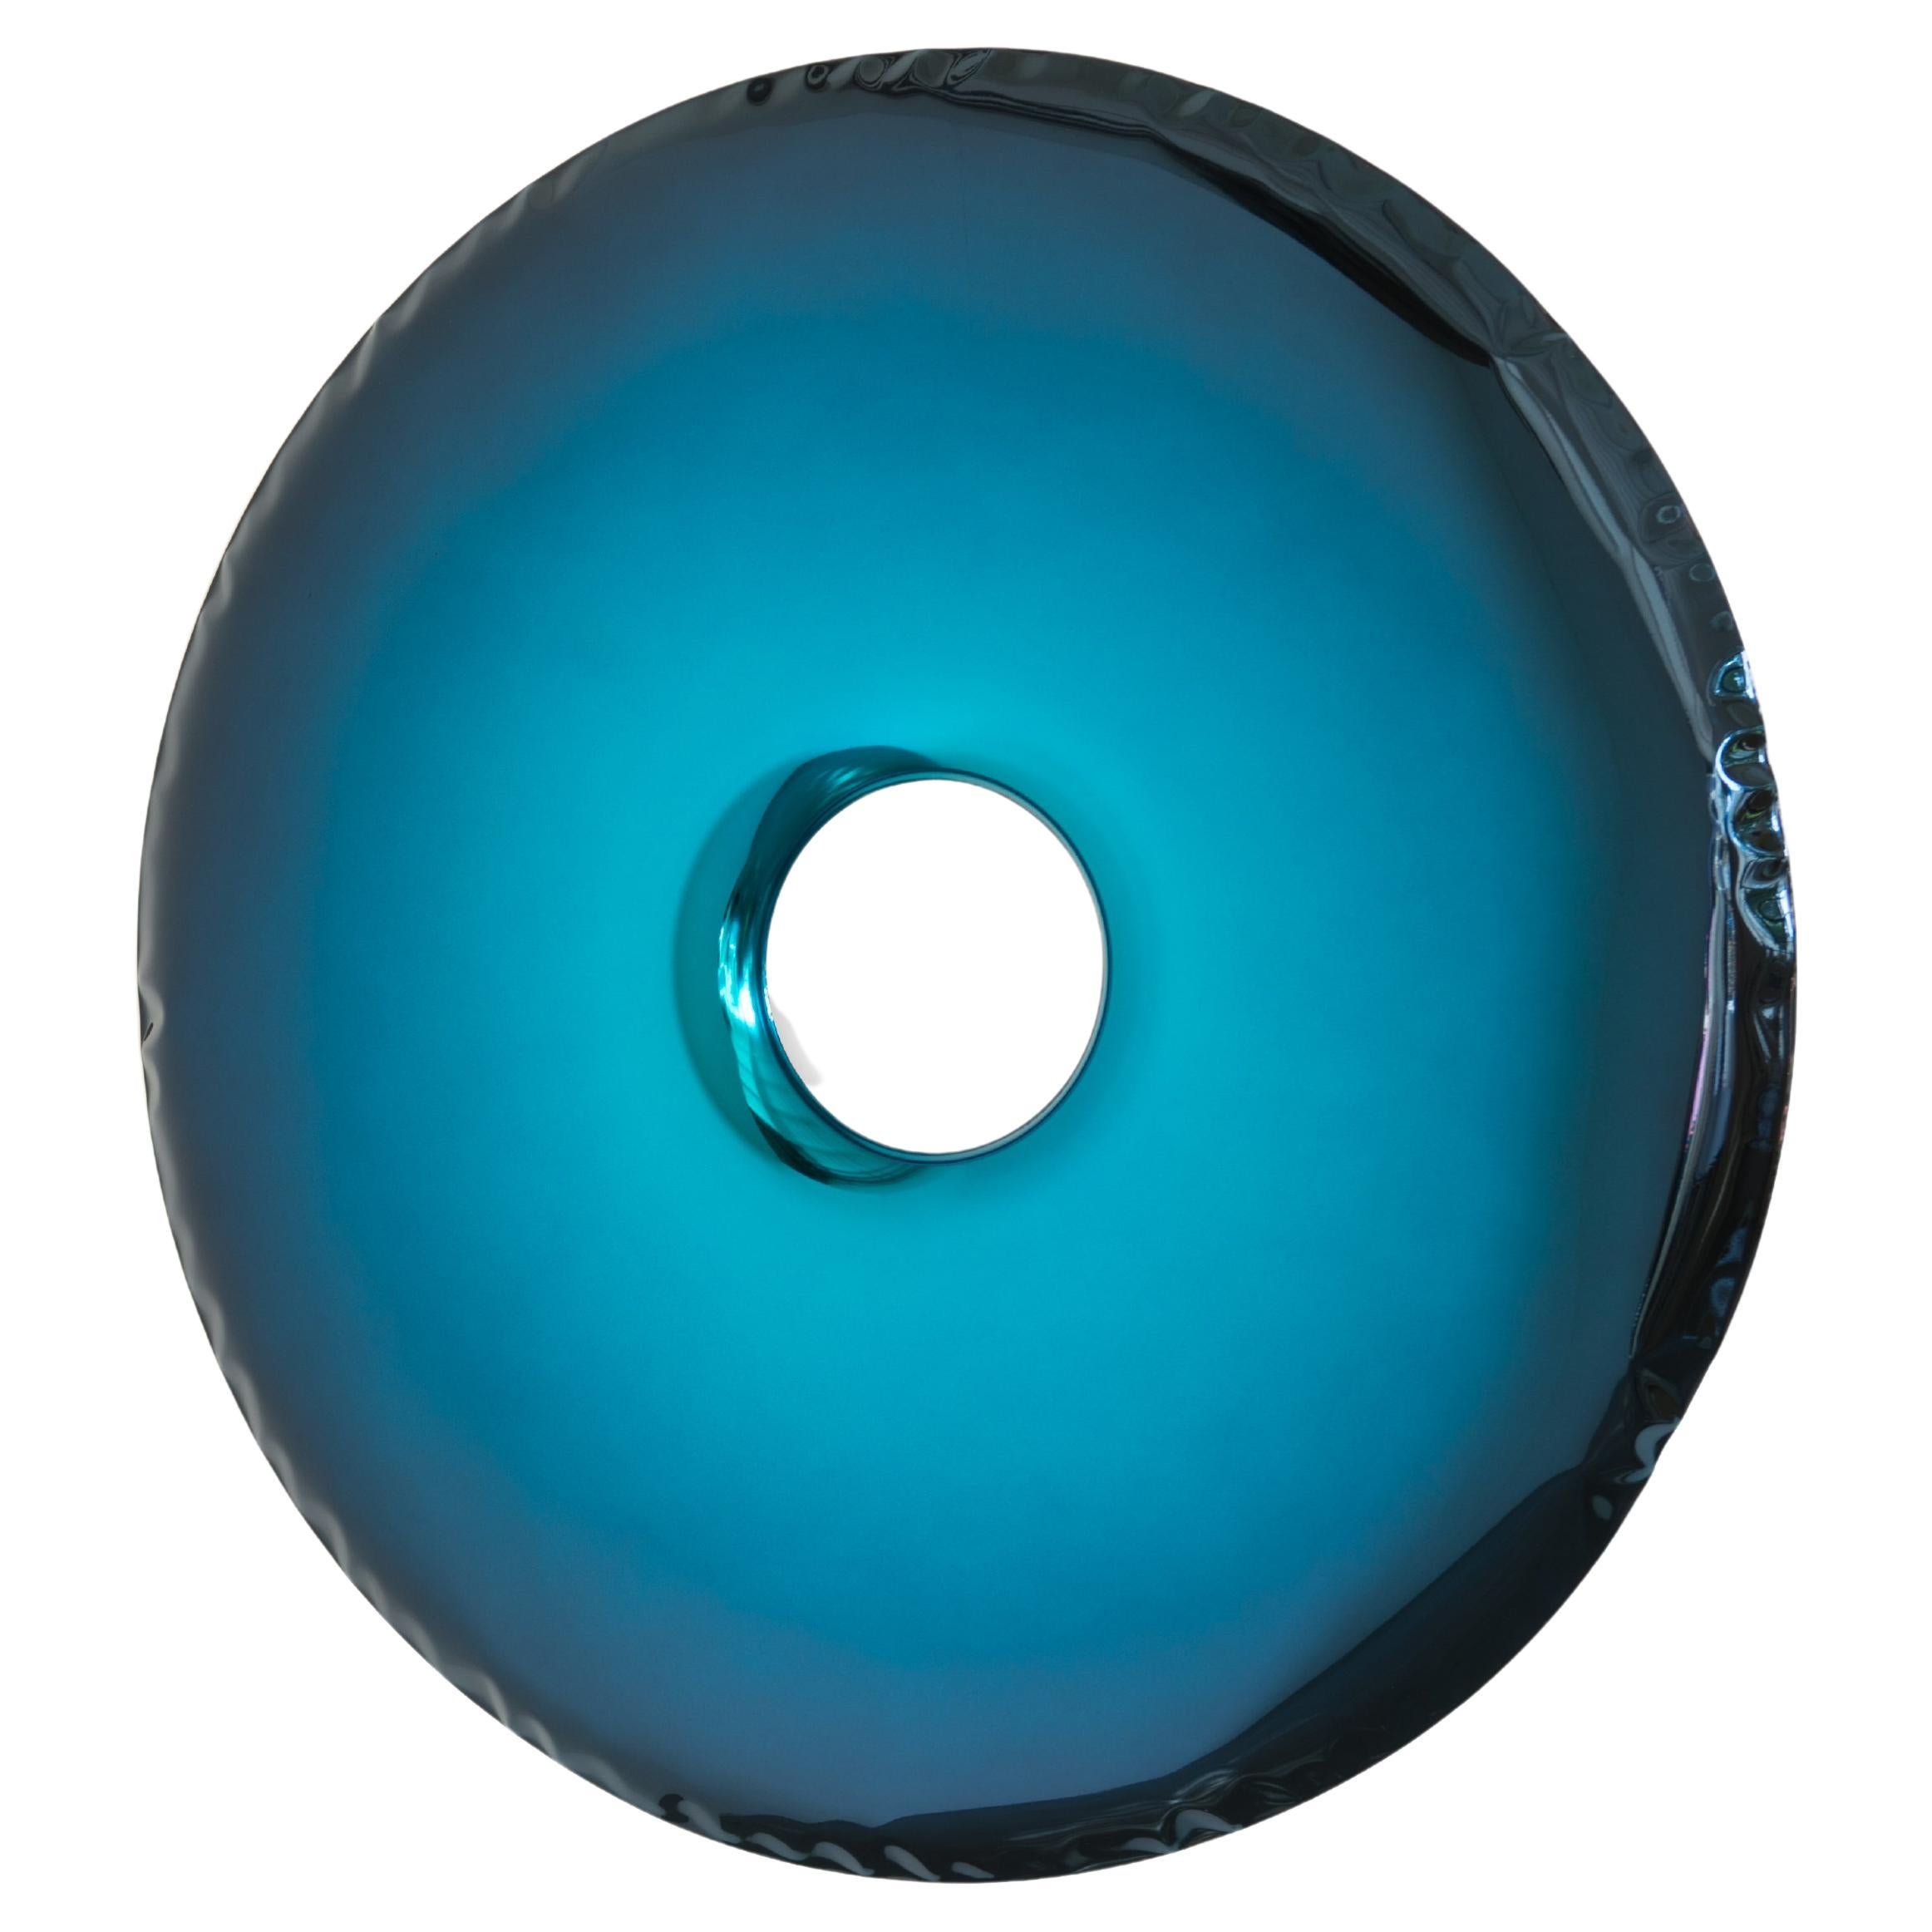 Mirror Rondo 75 'Deep Space Blue' in Stainless Steel by Zieta Prozessdesign